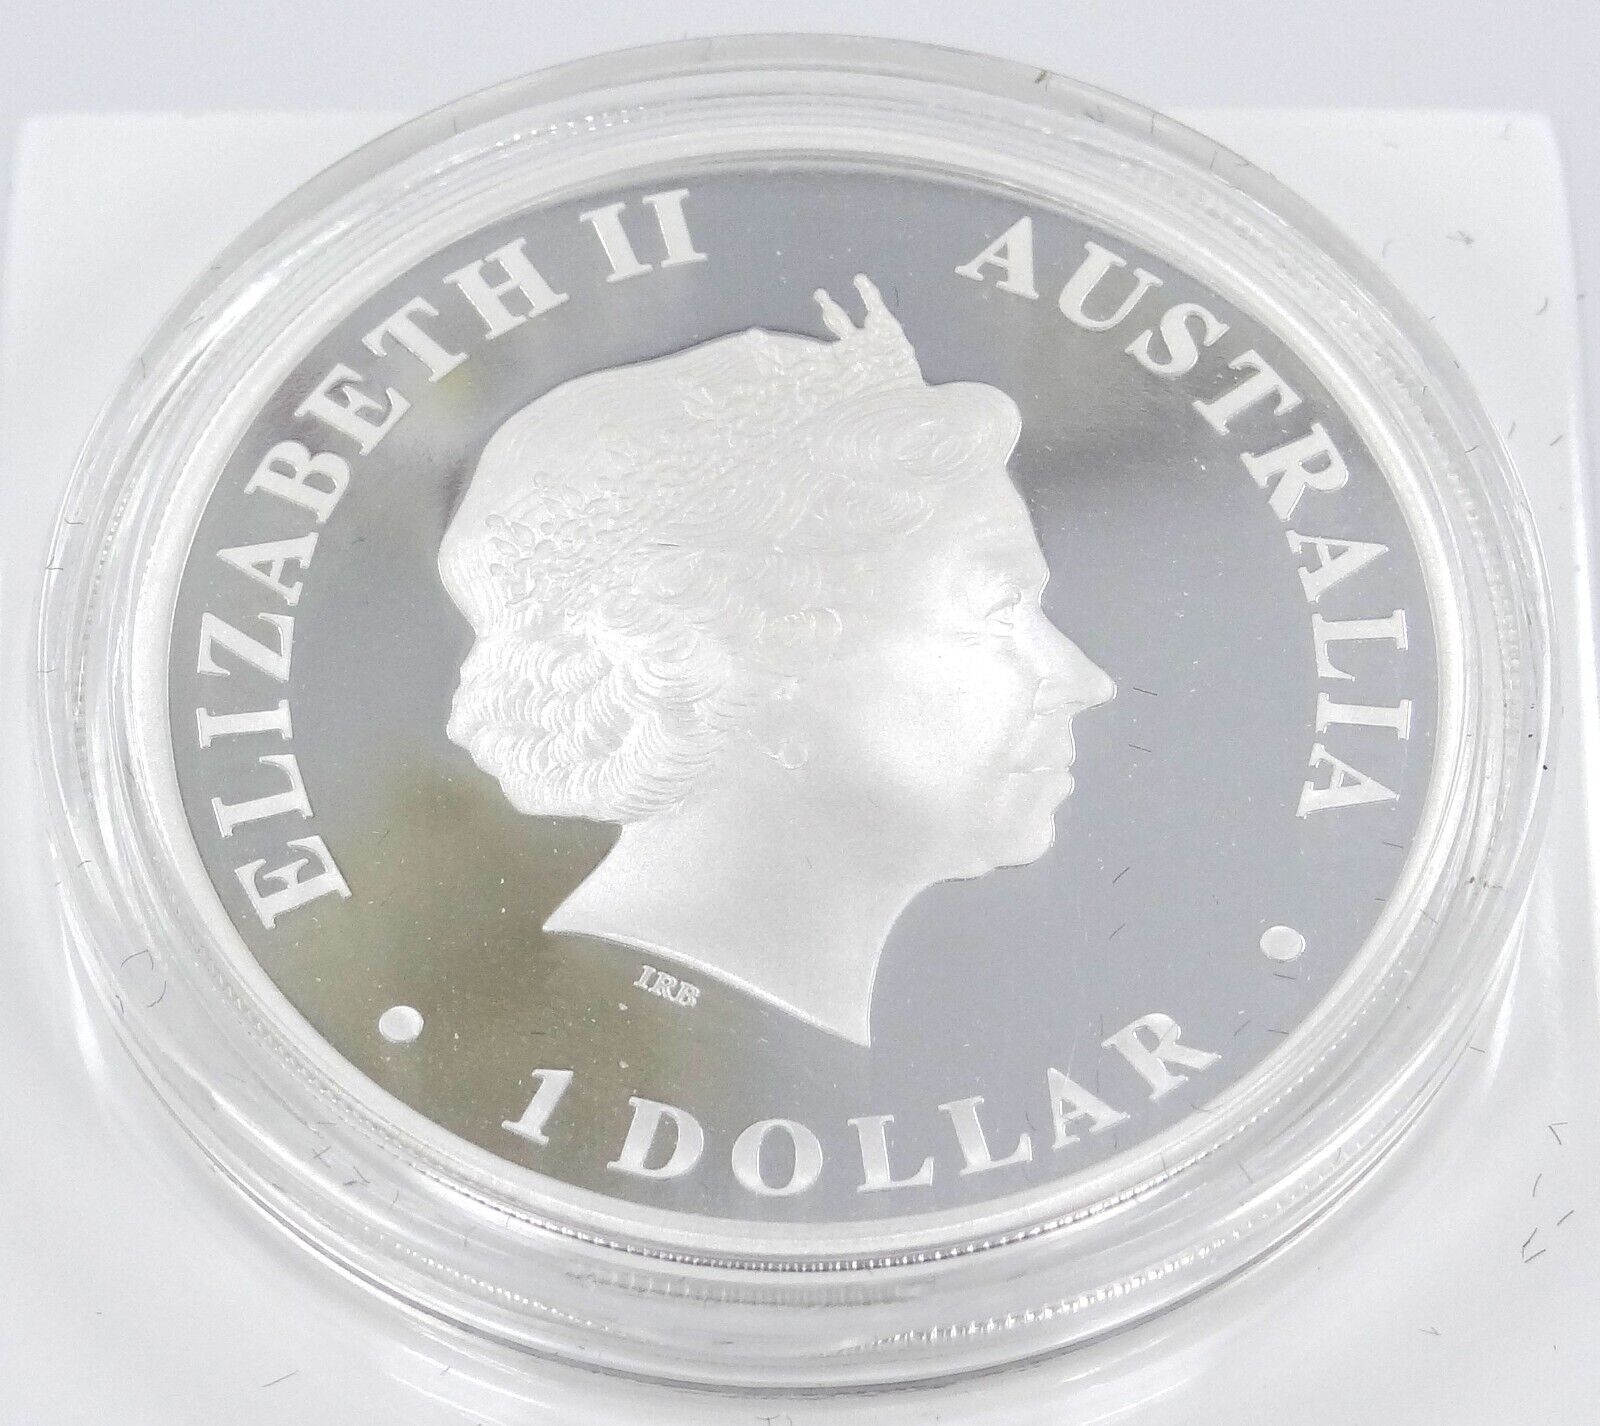 1 Oz Silver Coin 2009 $1 Australia Discover Australia Proof Coin - Echidna-classypw.com-2